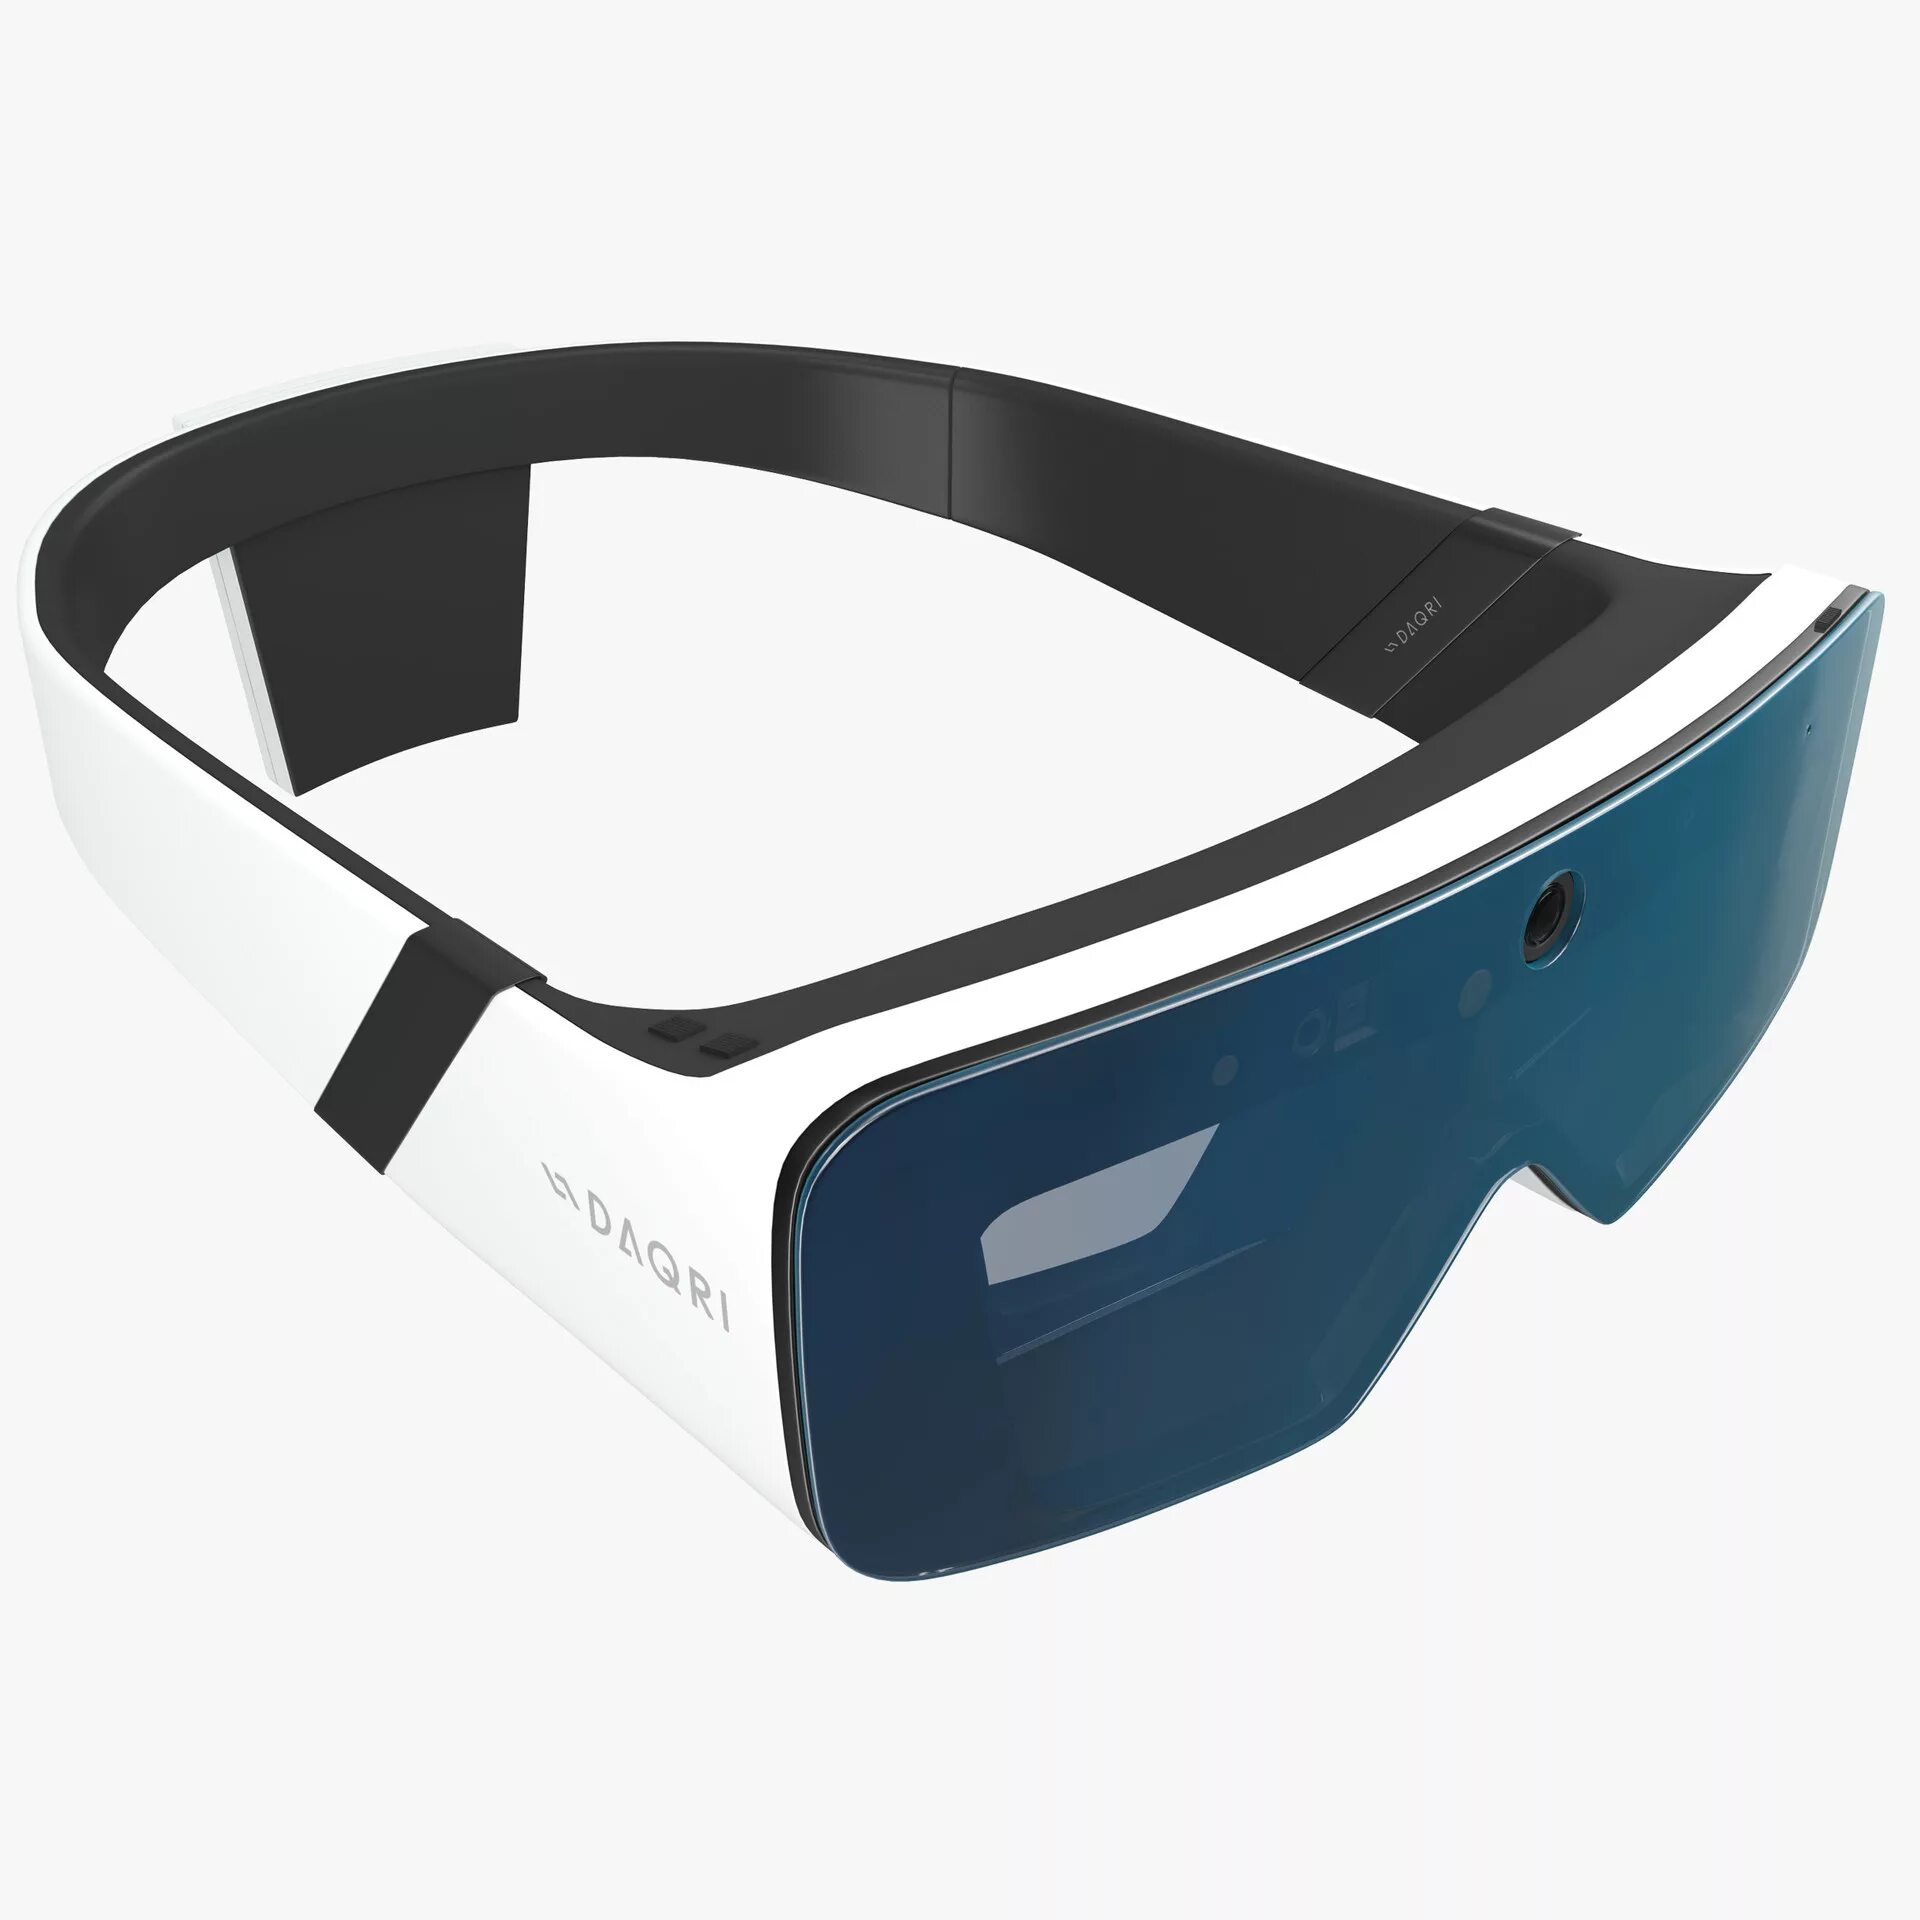 Смарт-очки 3glasses d2. Очки модели Vitali mw4028 c3. VR Glasses 3d model. Briko очки 3 стекла. Солнечные очки 3